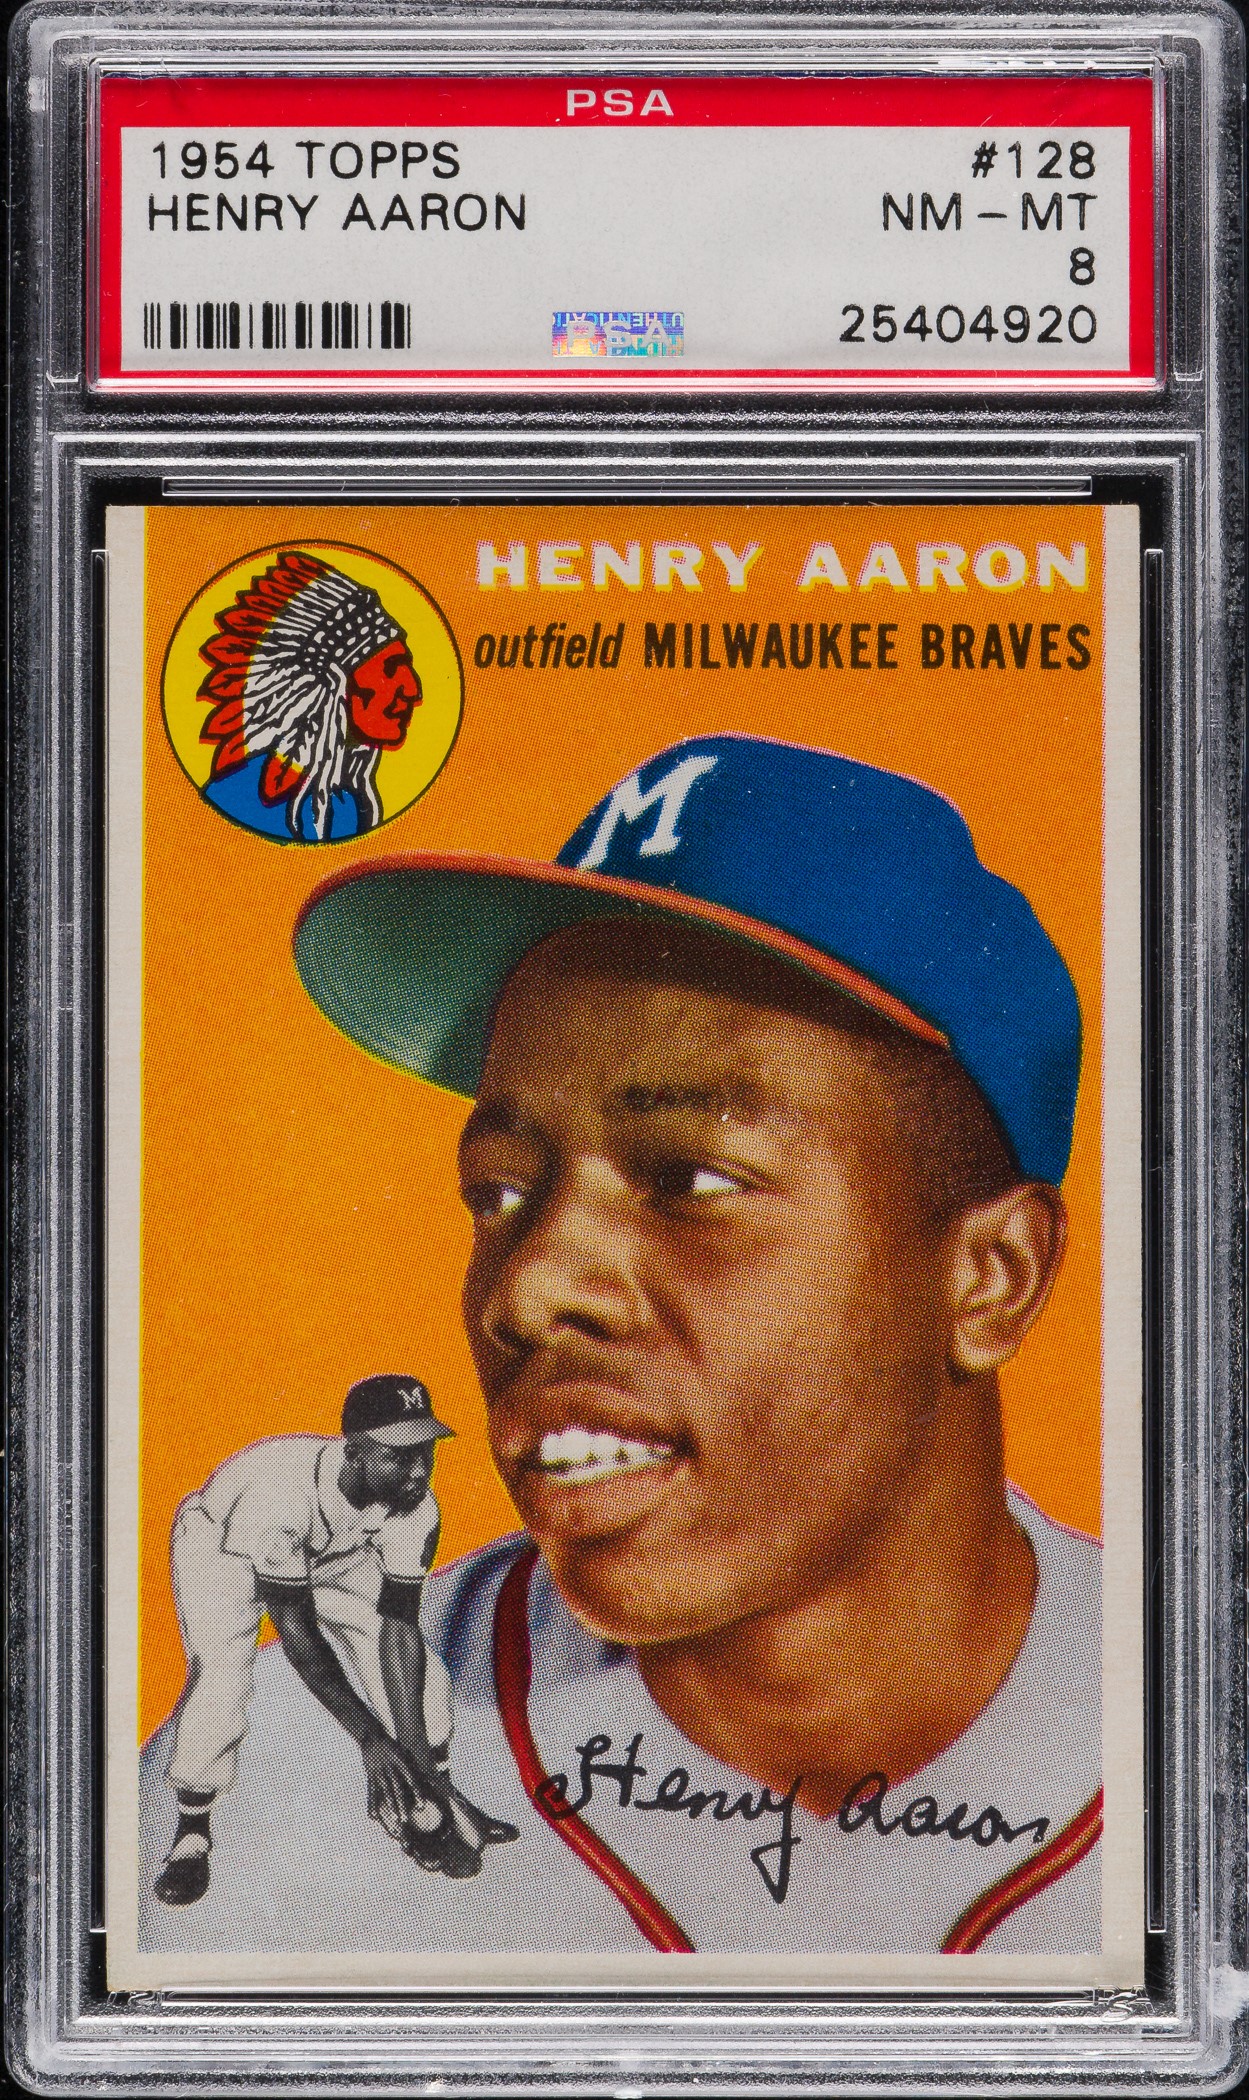  1954 Topps # 128 Hank Aaron Milwaukee Braves (Baseball